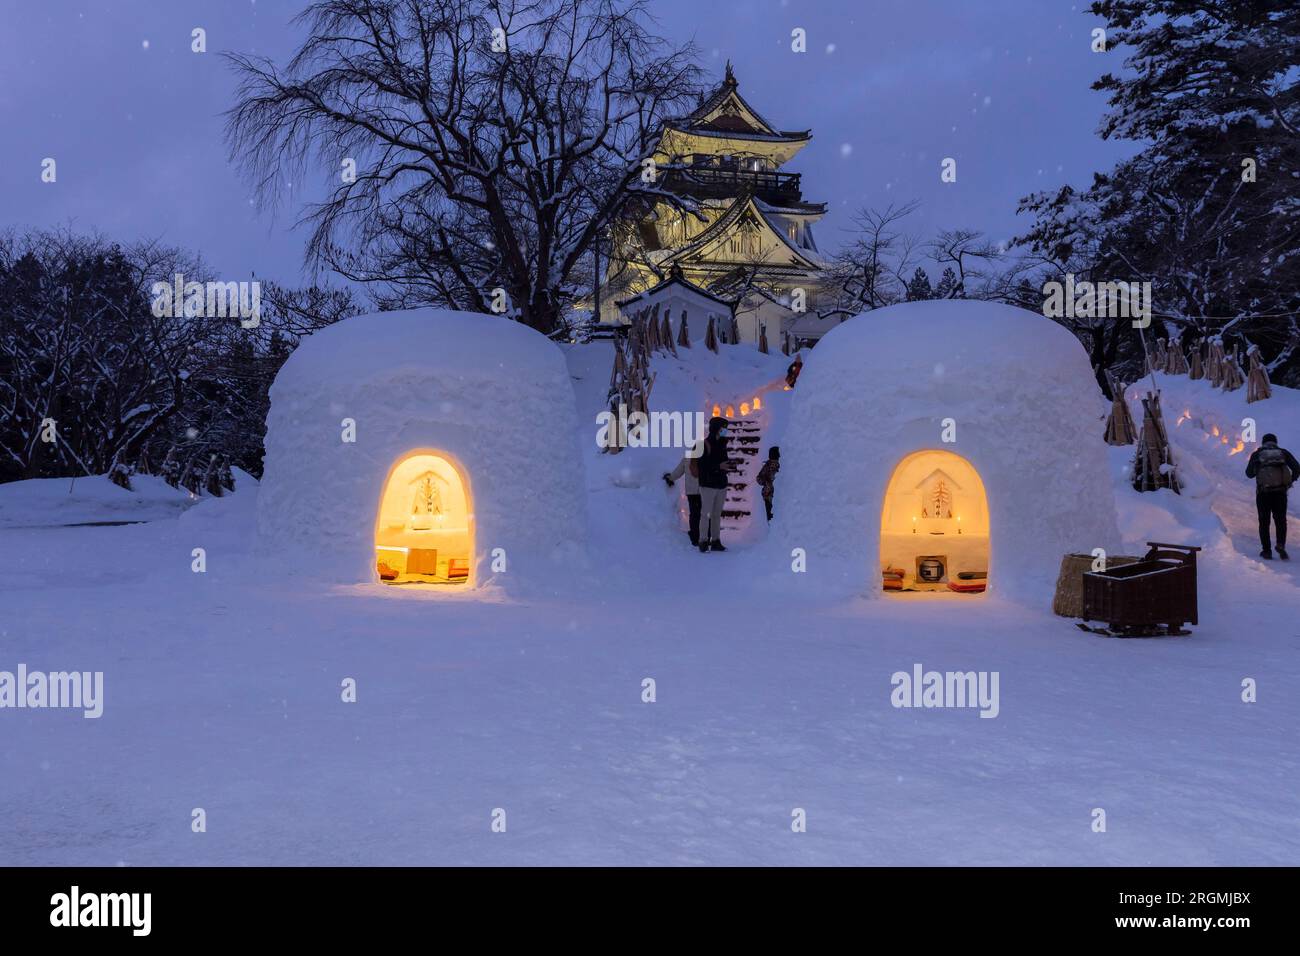 Kamakura, festival d'hiver local, dôme de neige (igloo), sanctuaire du dieu de l'eau, Yokote-JO (château), ville de Yokote, Akita, Tohoku, Japon, Asie de l'est, Asie Banque D'Images